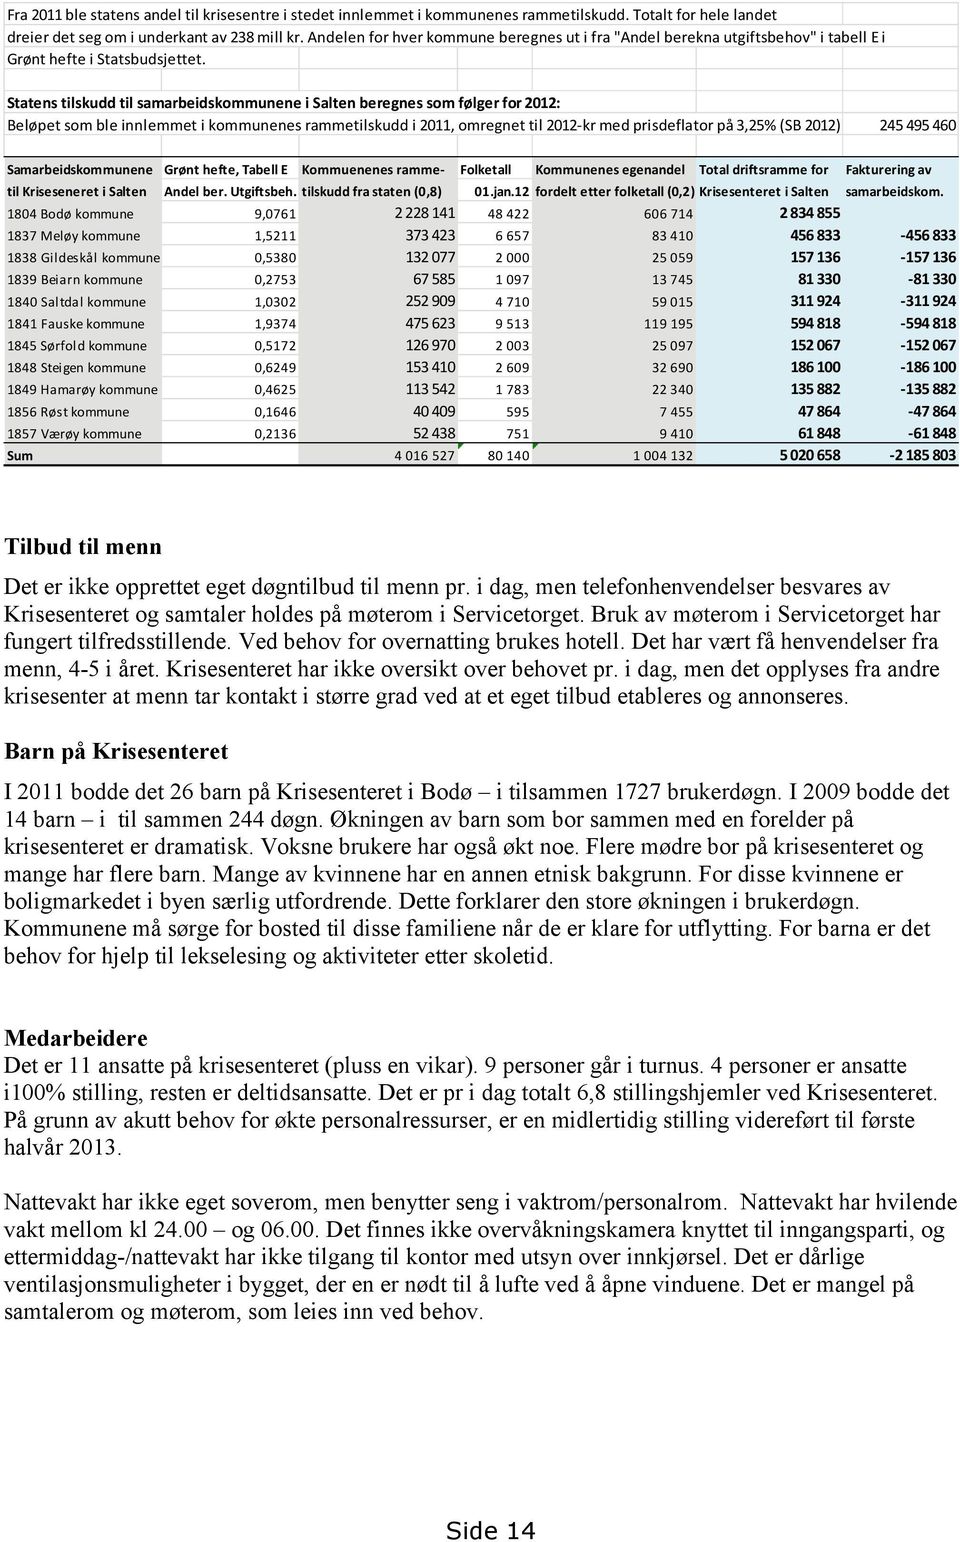 Statens tilskudd til samarbeidskommunene i Salten beregnes som følger for 2012: Beløpet som ble innlemmet i kommunenes rammetilskudd i 2011, omregnet til 2012-kr med prisdeflator på 3,25% (SB 2012)